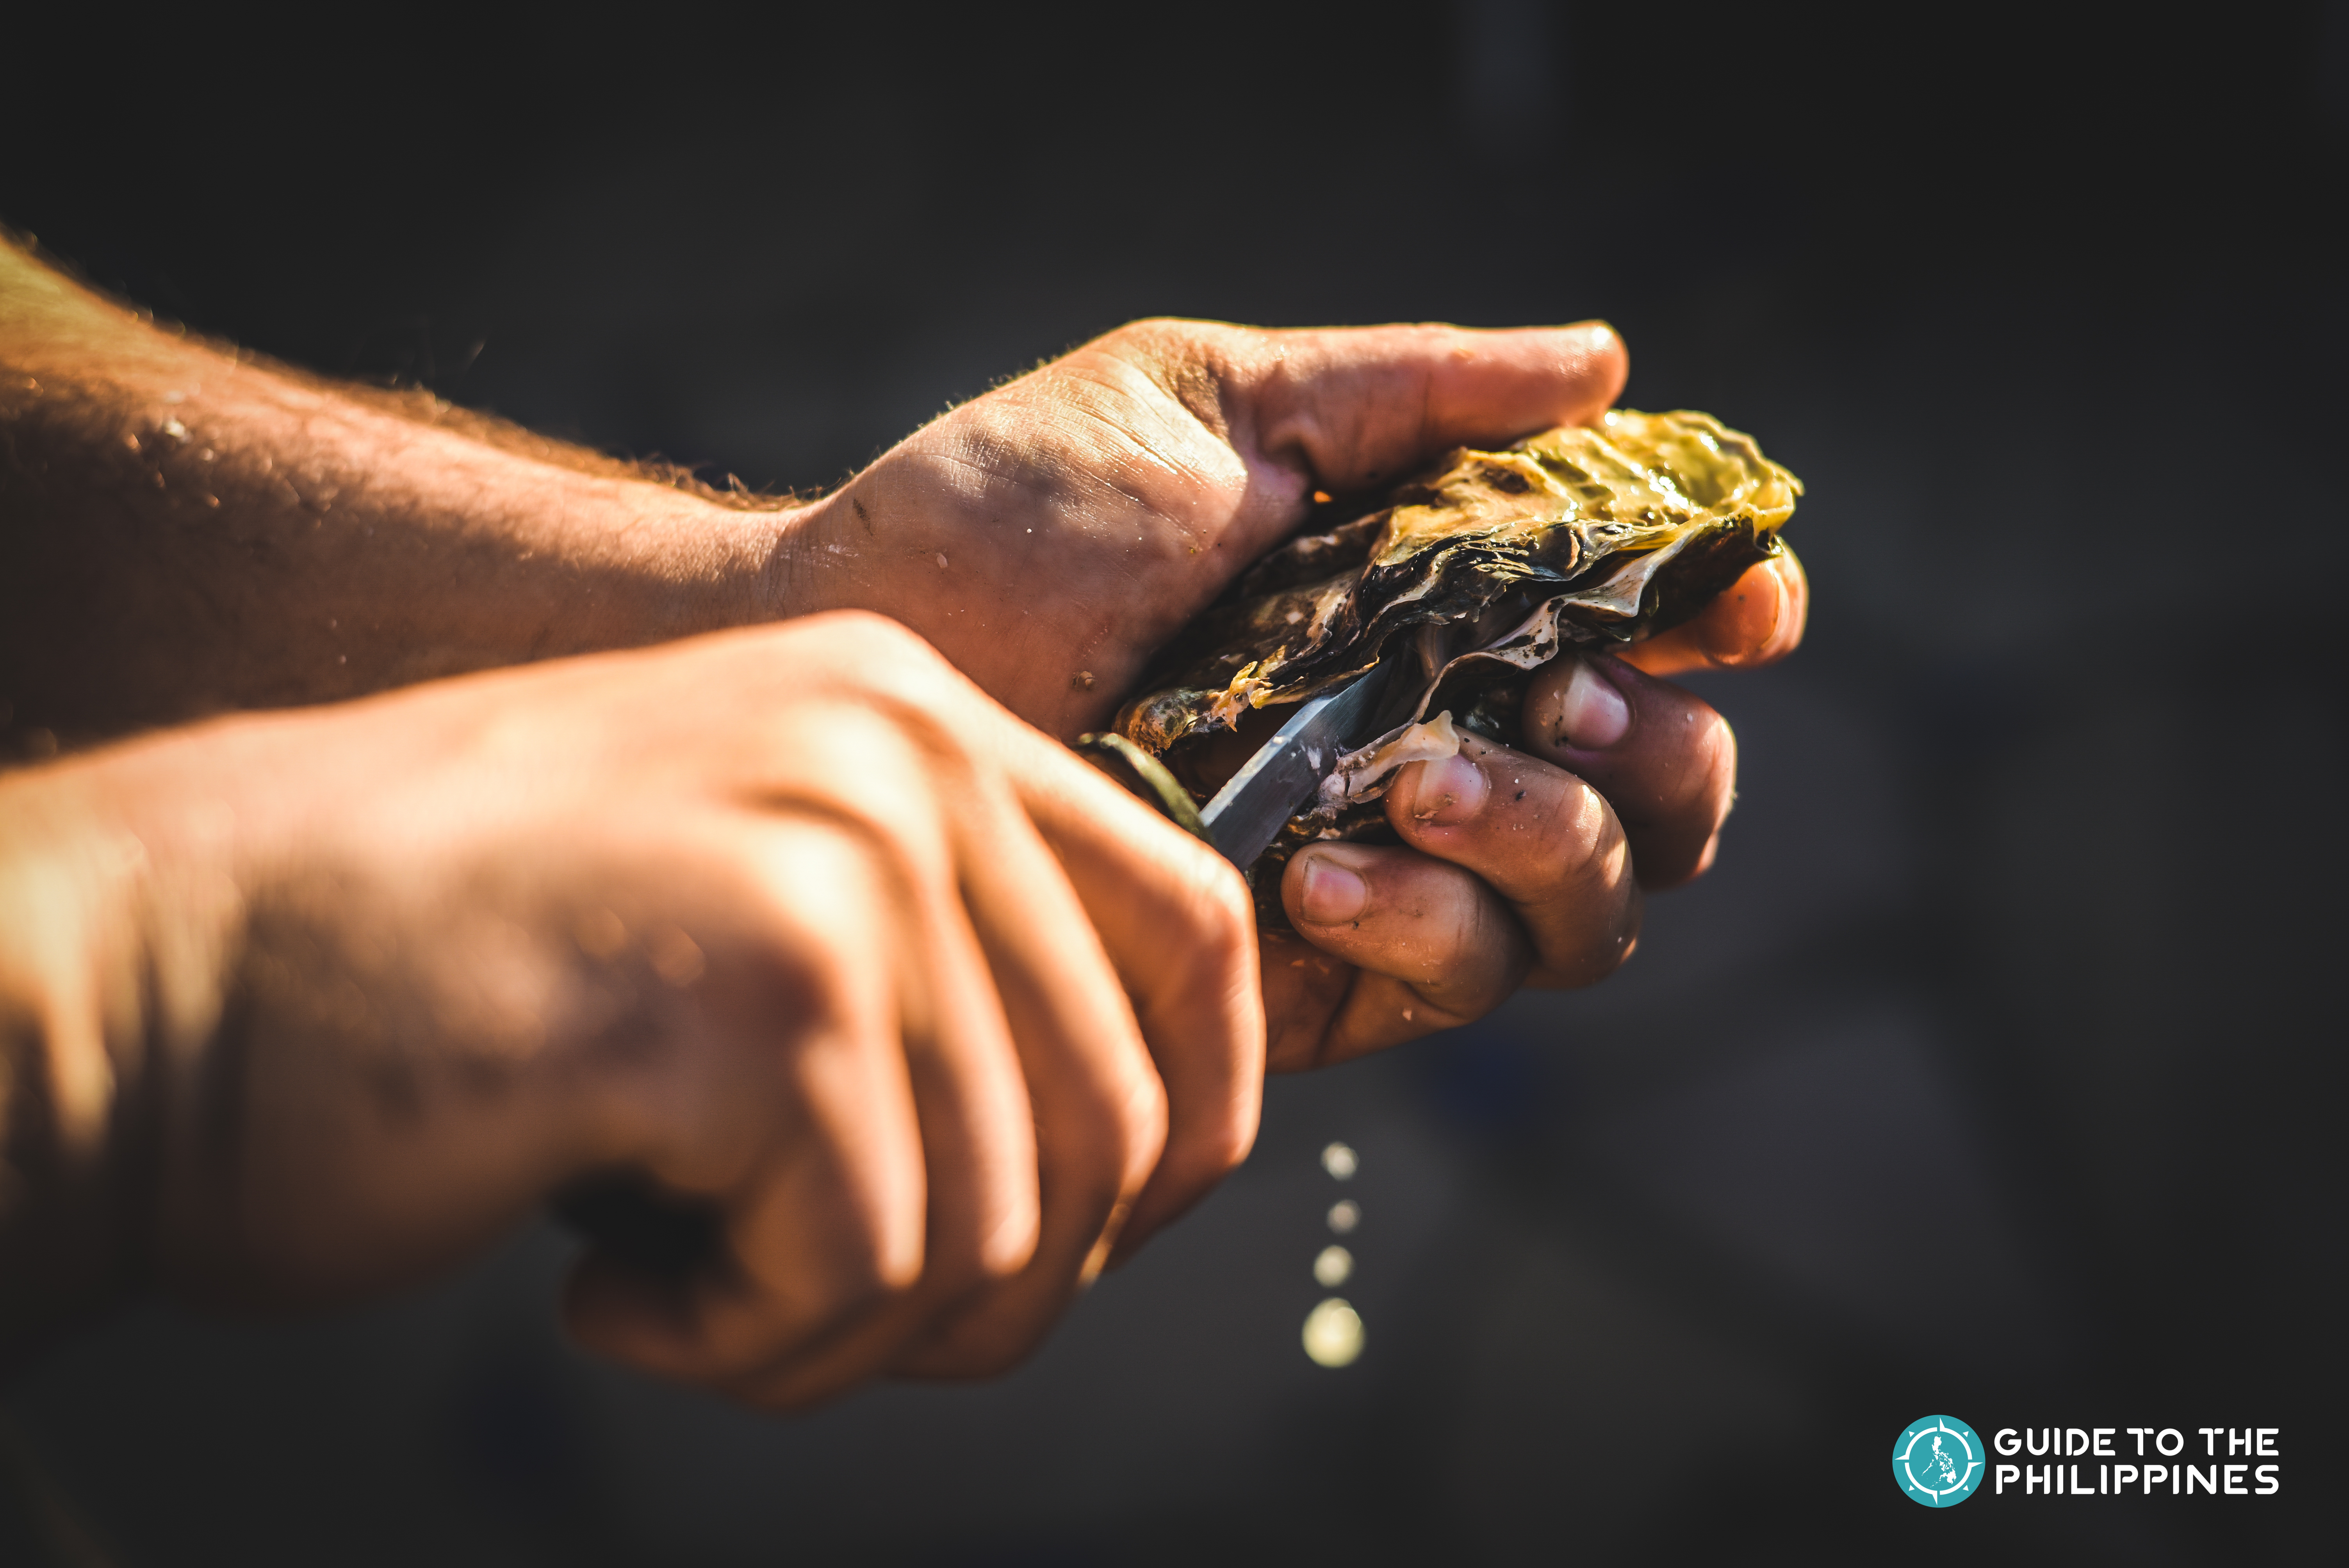 shucking an oyster at Bohol Cambuhay Oyster Village